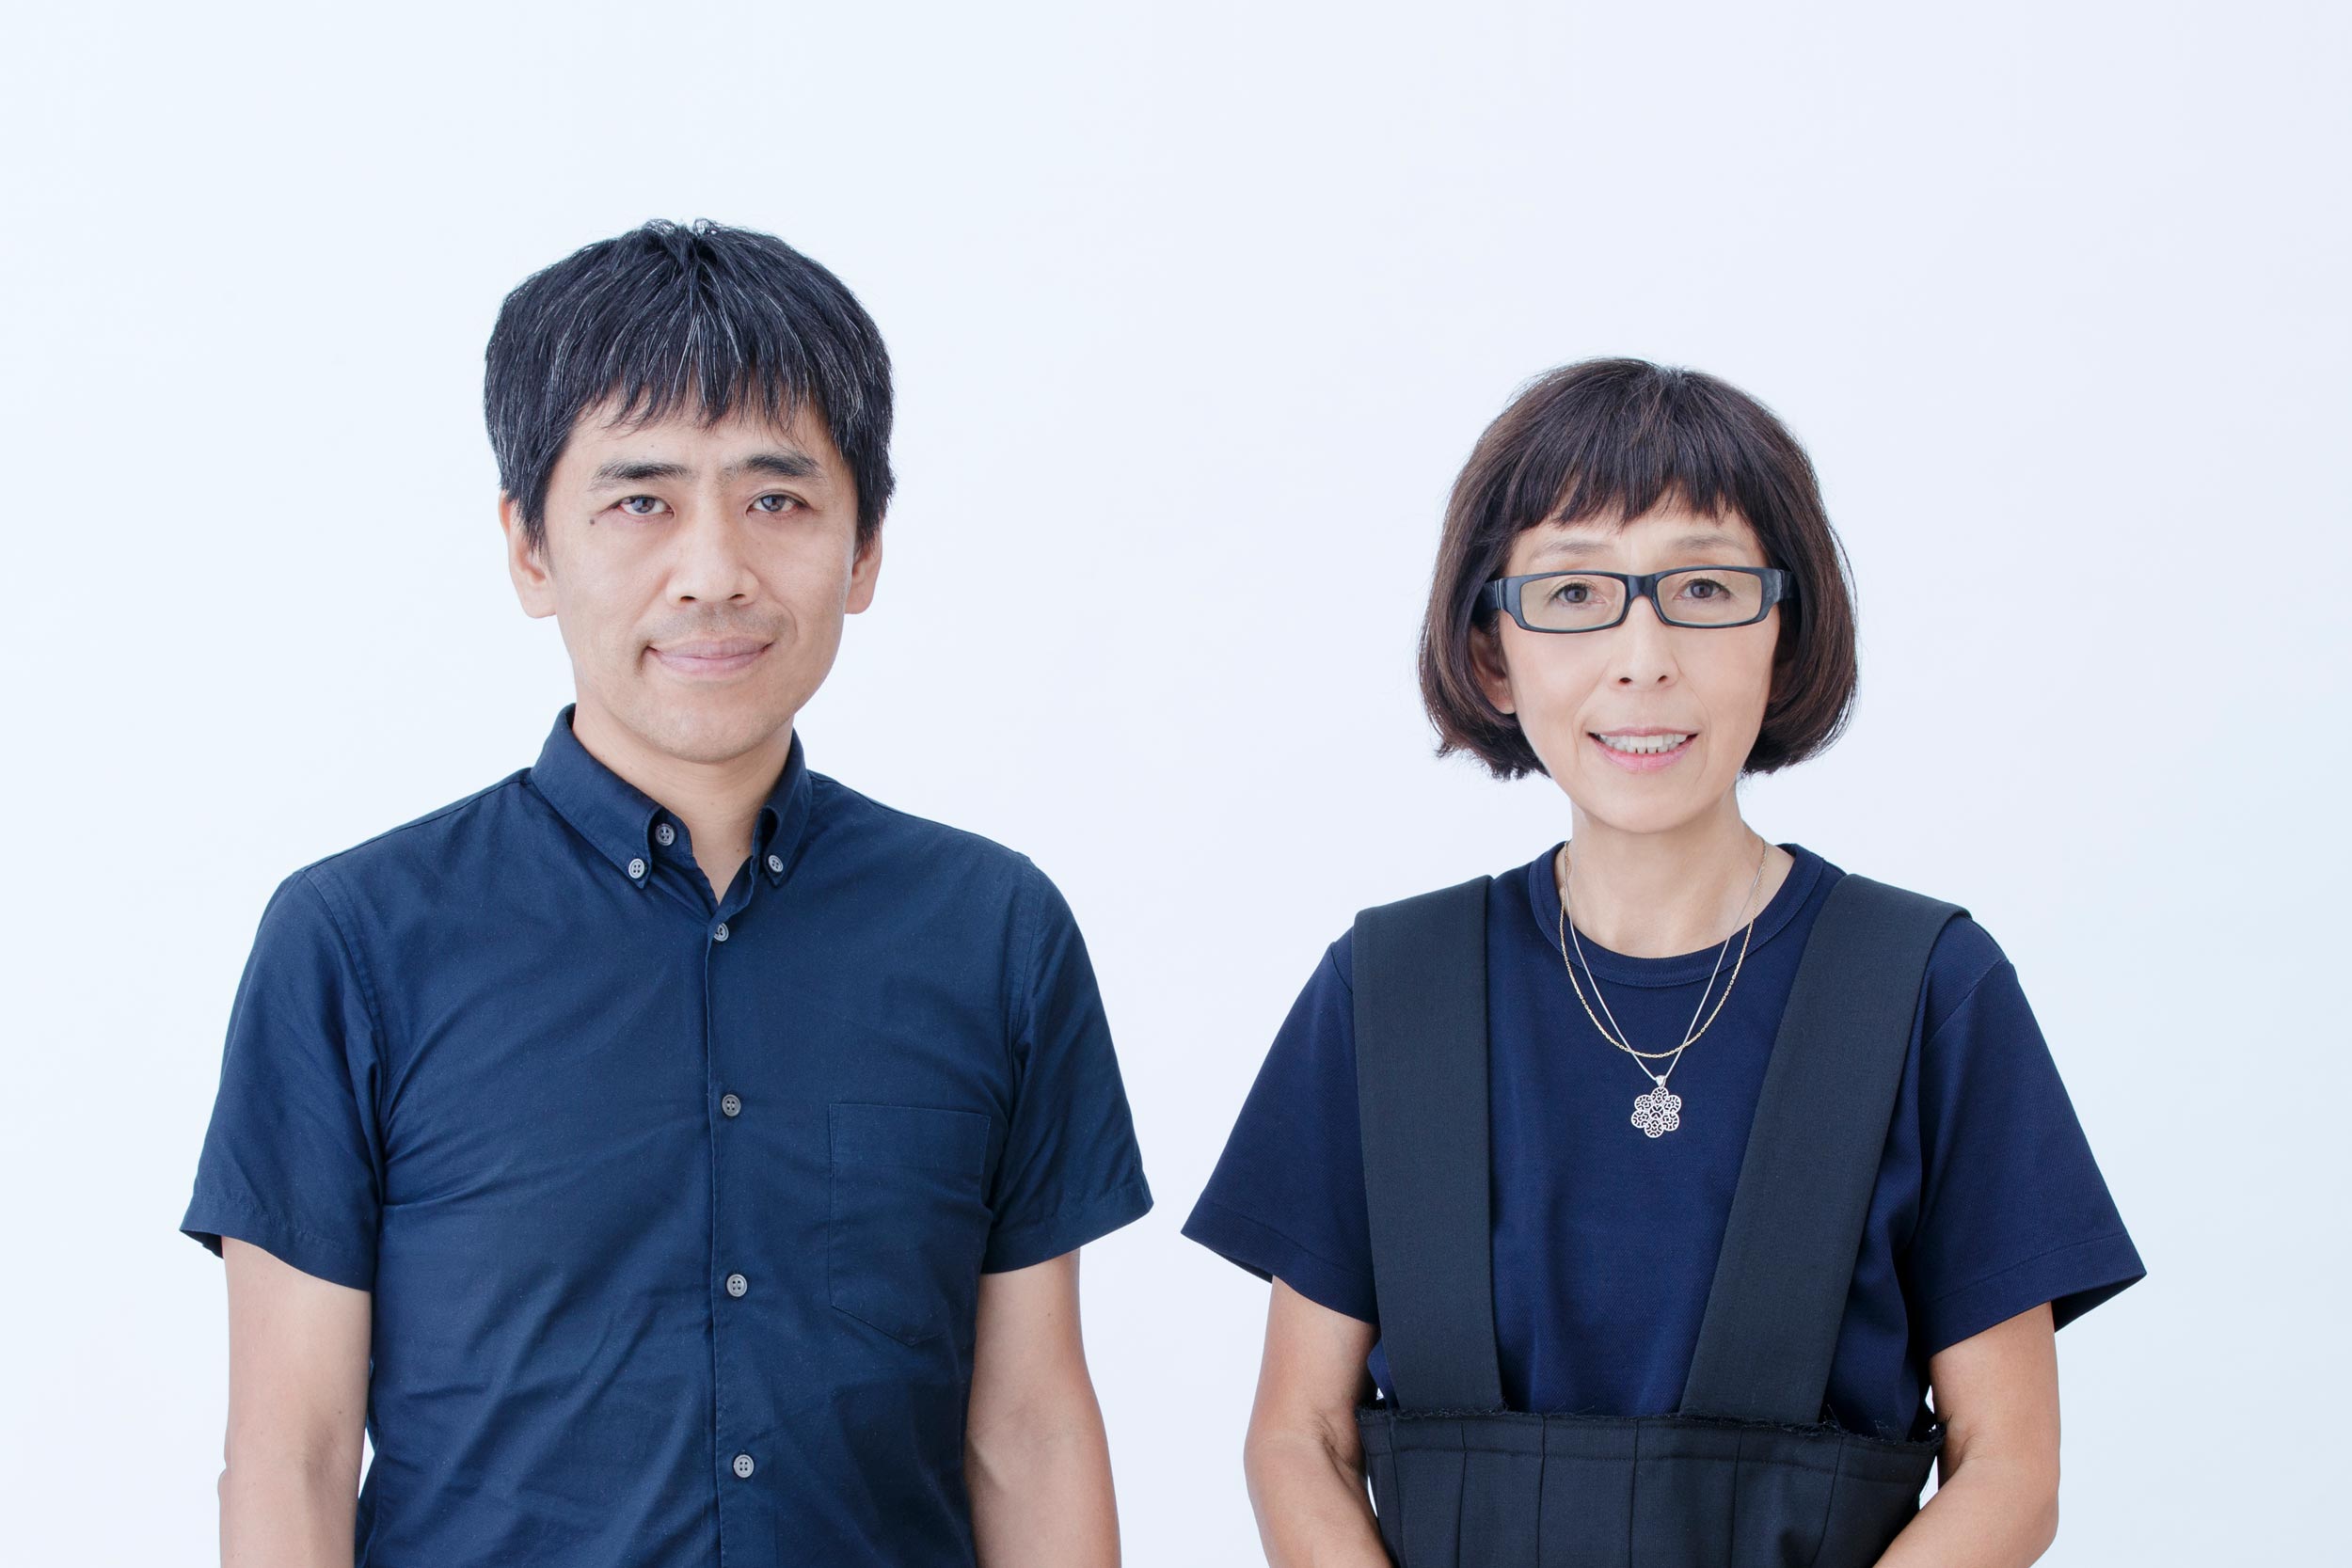 Kazuyo Sejima and Ryue Nishizawa, Thomas Jefferson Foundation